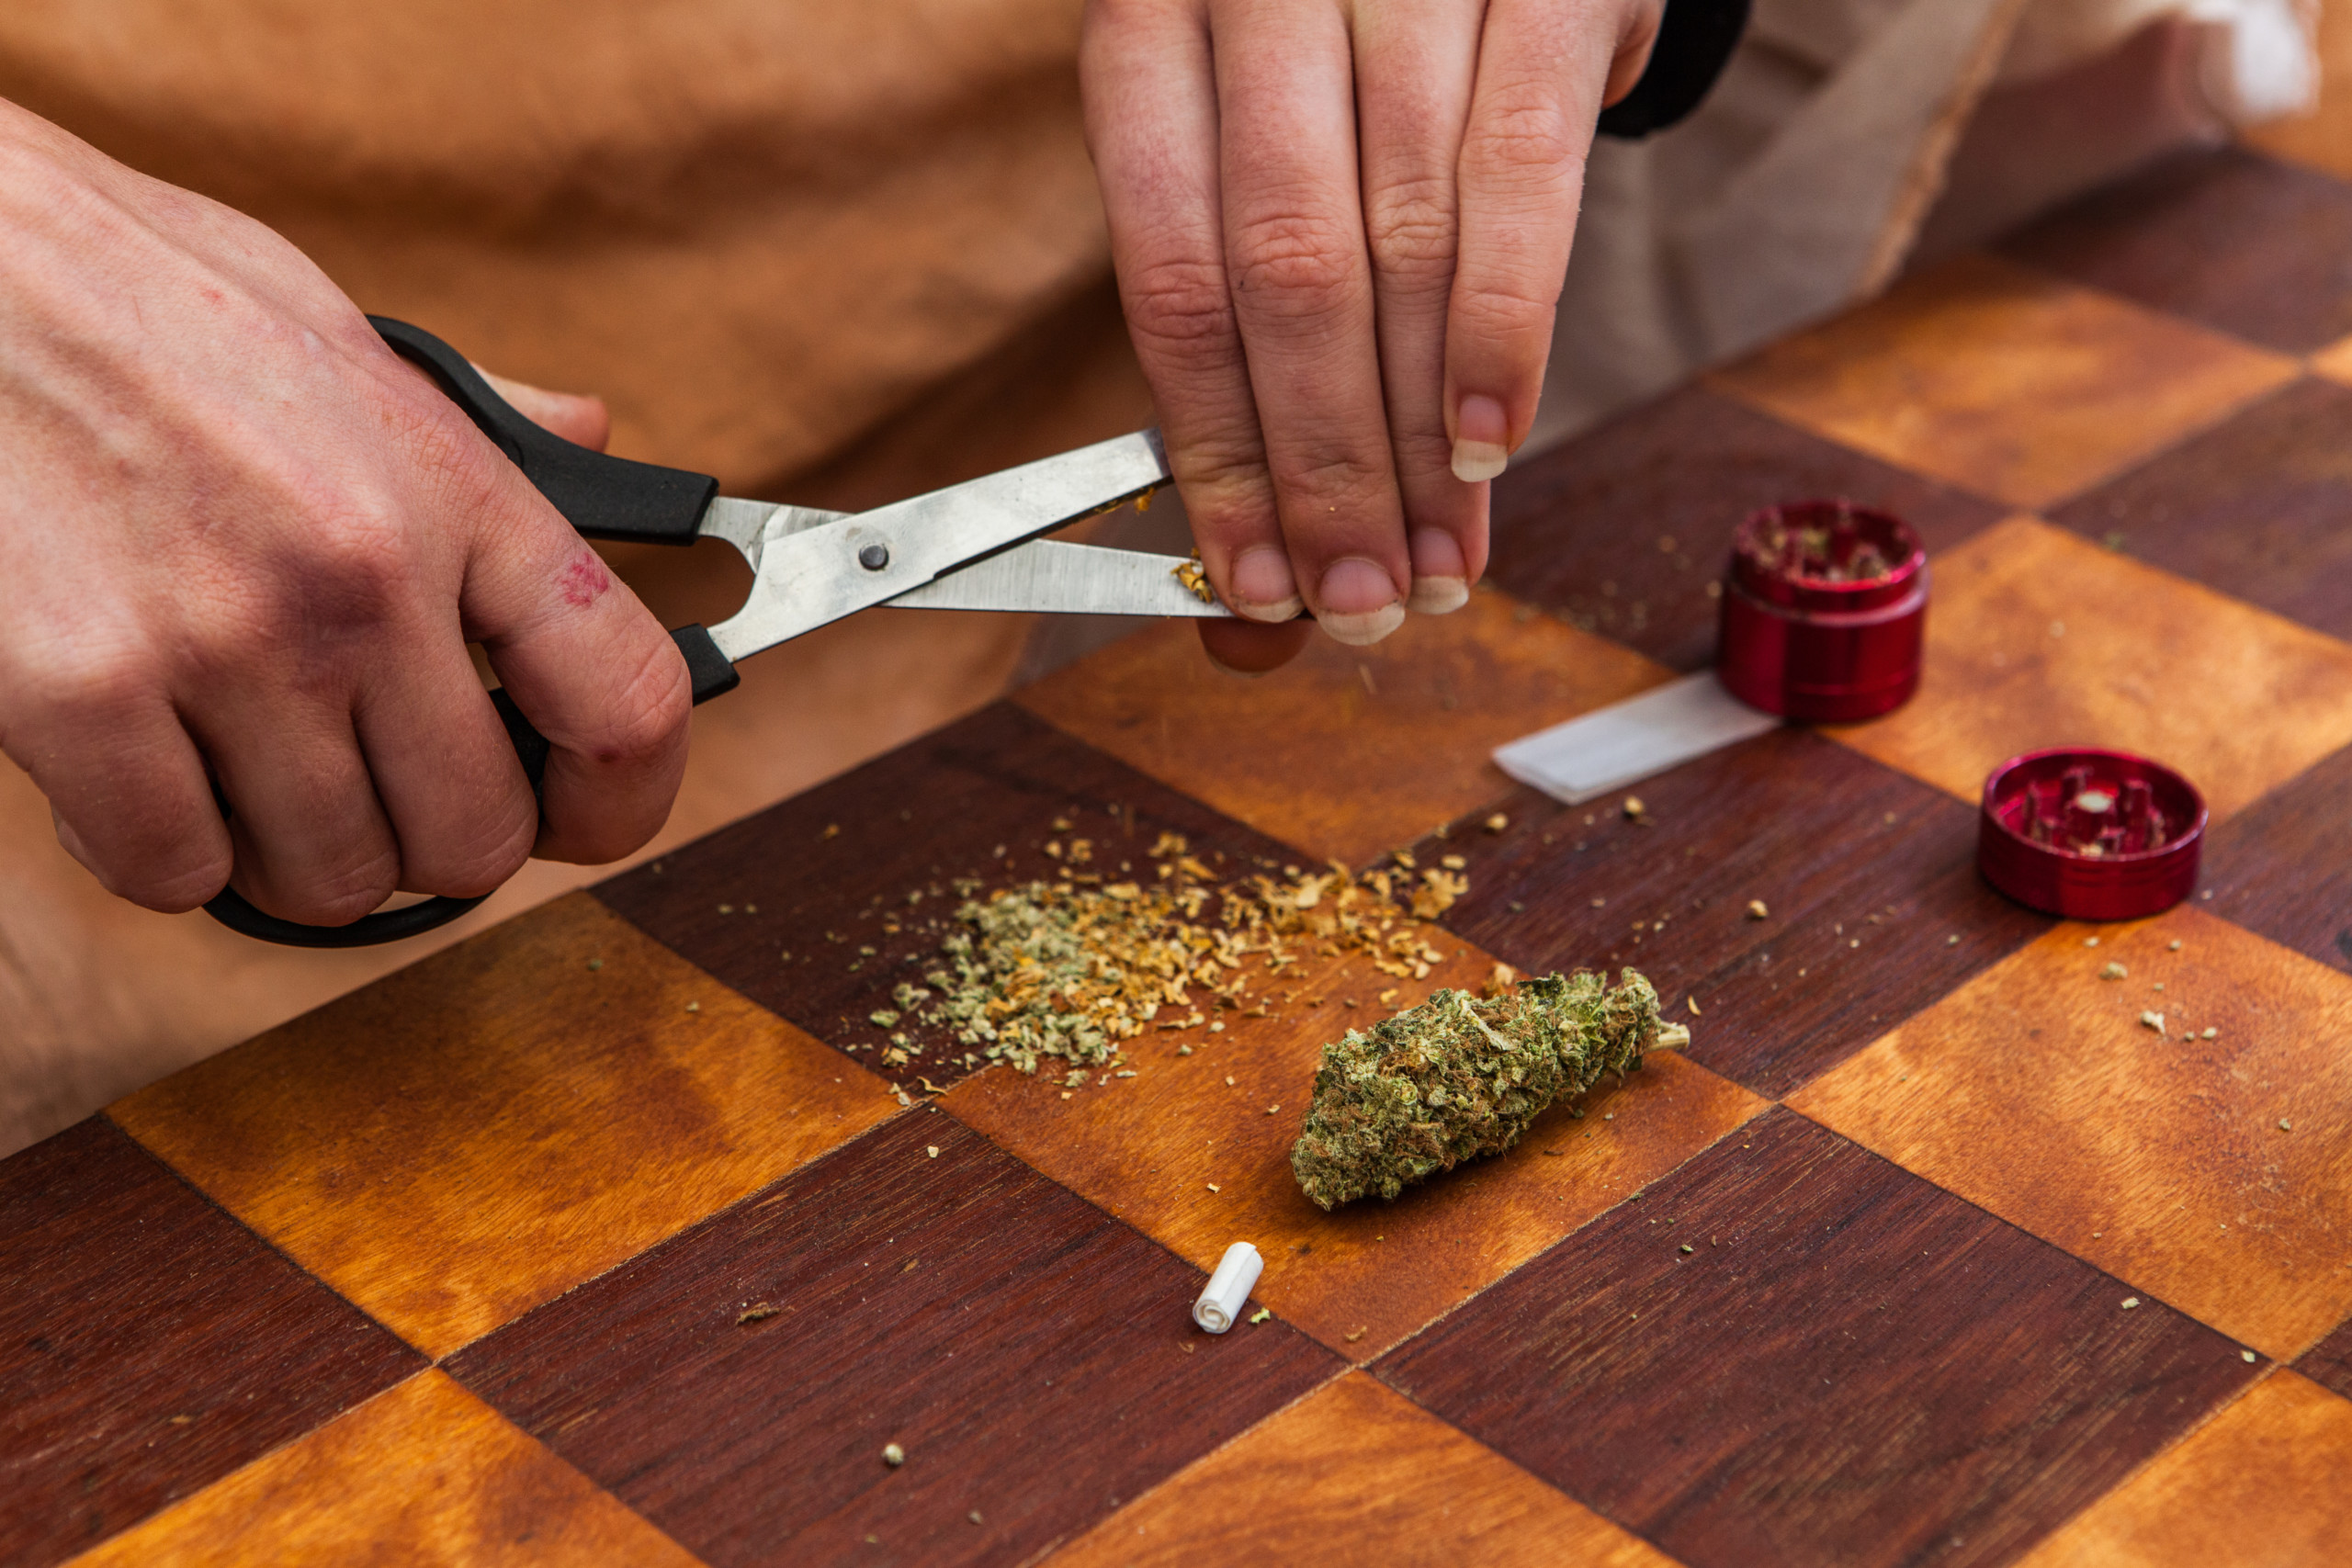 グラインダーなしで大麻を刻める グラインダー以外で大麻を刻む方法4選 Marijuana Jp マリファナｊｐ 国内最大の大麻メディア